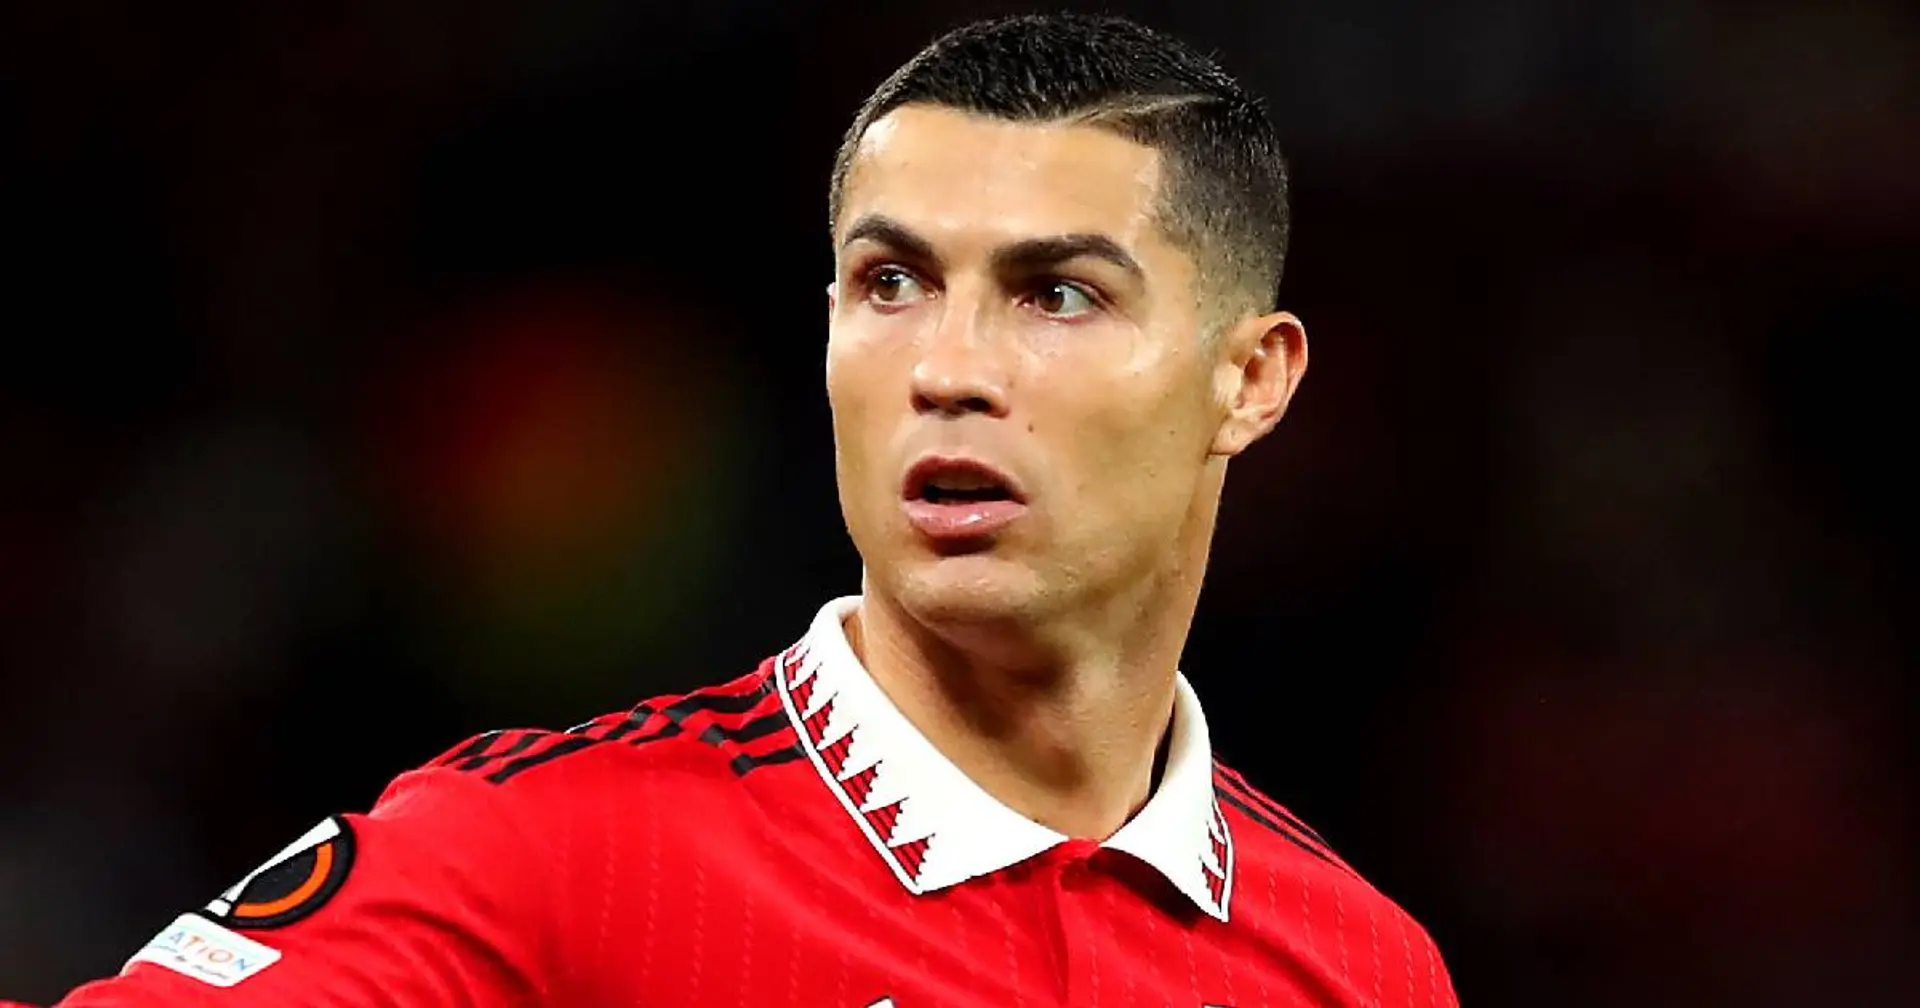 Il Milan ha davvero bisogno di Cristiano Ronaldo? I tifosi rossoneri non hanno dubbi sul portoghese